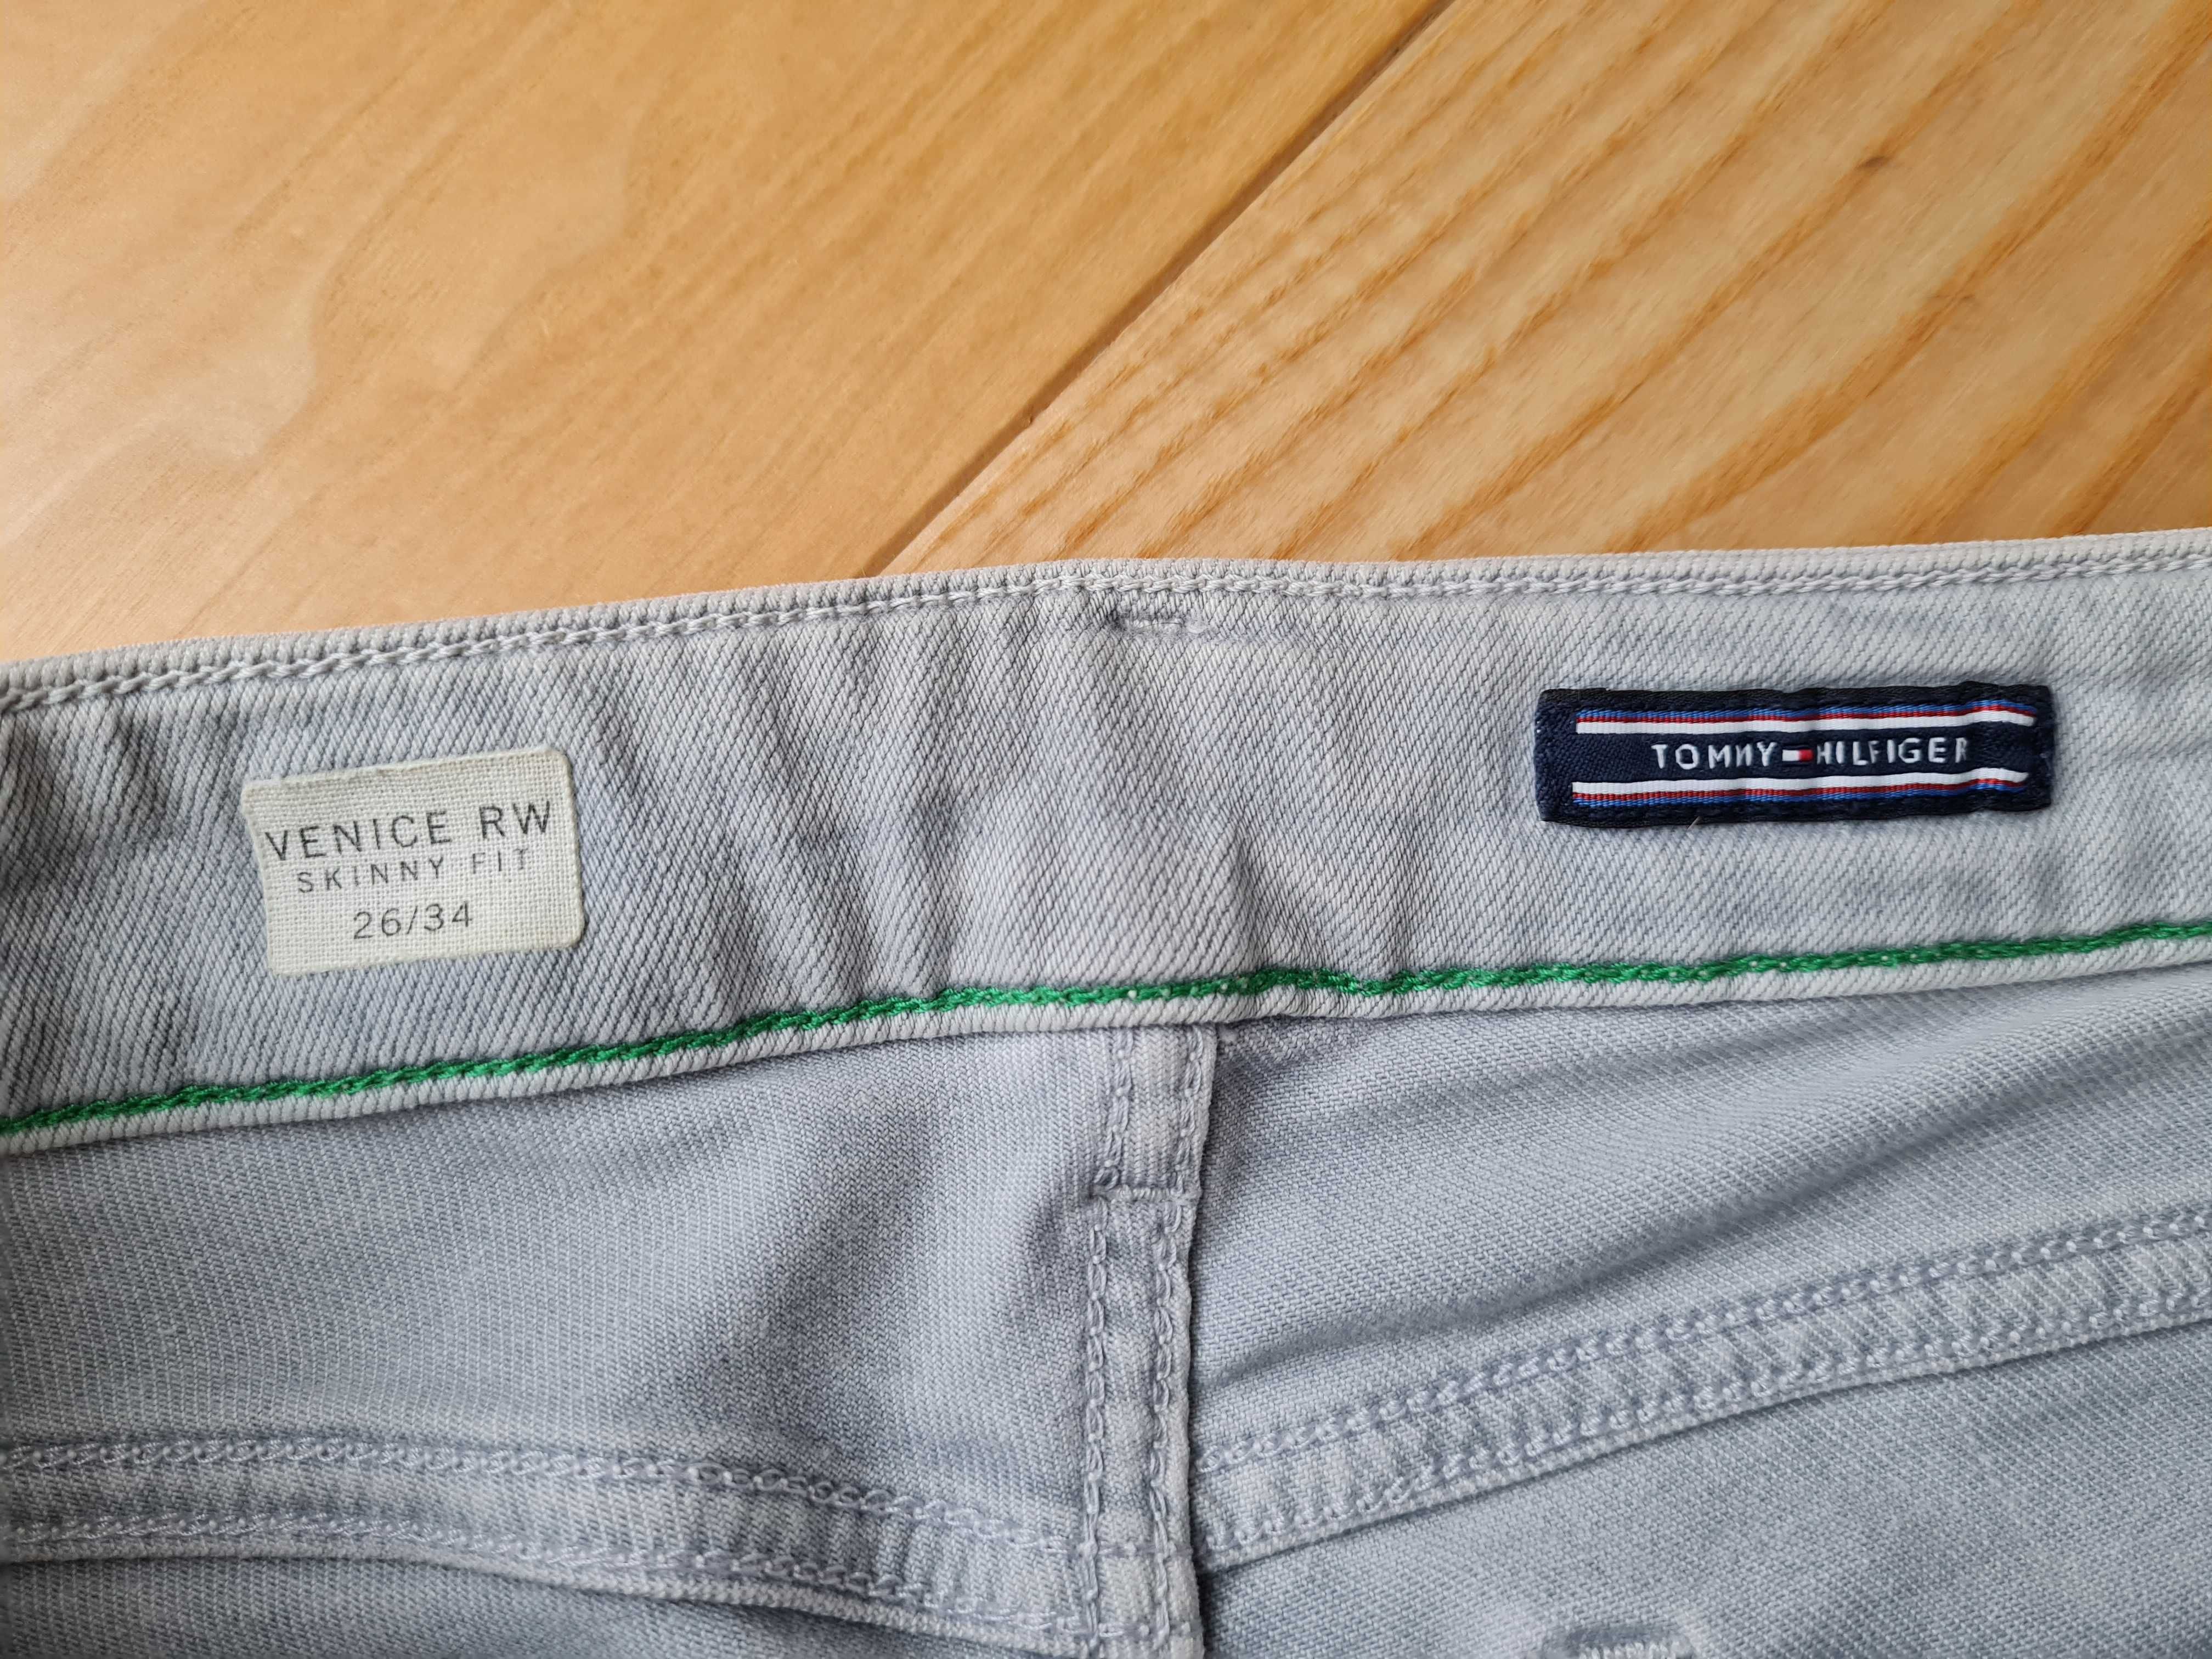 Spodnie jeansy rurki szare Tommy Hilfiger 26/34